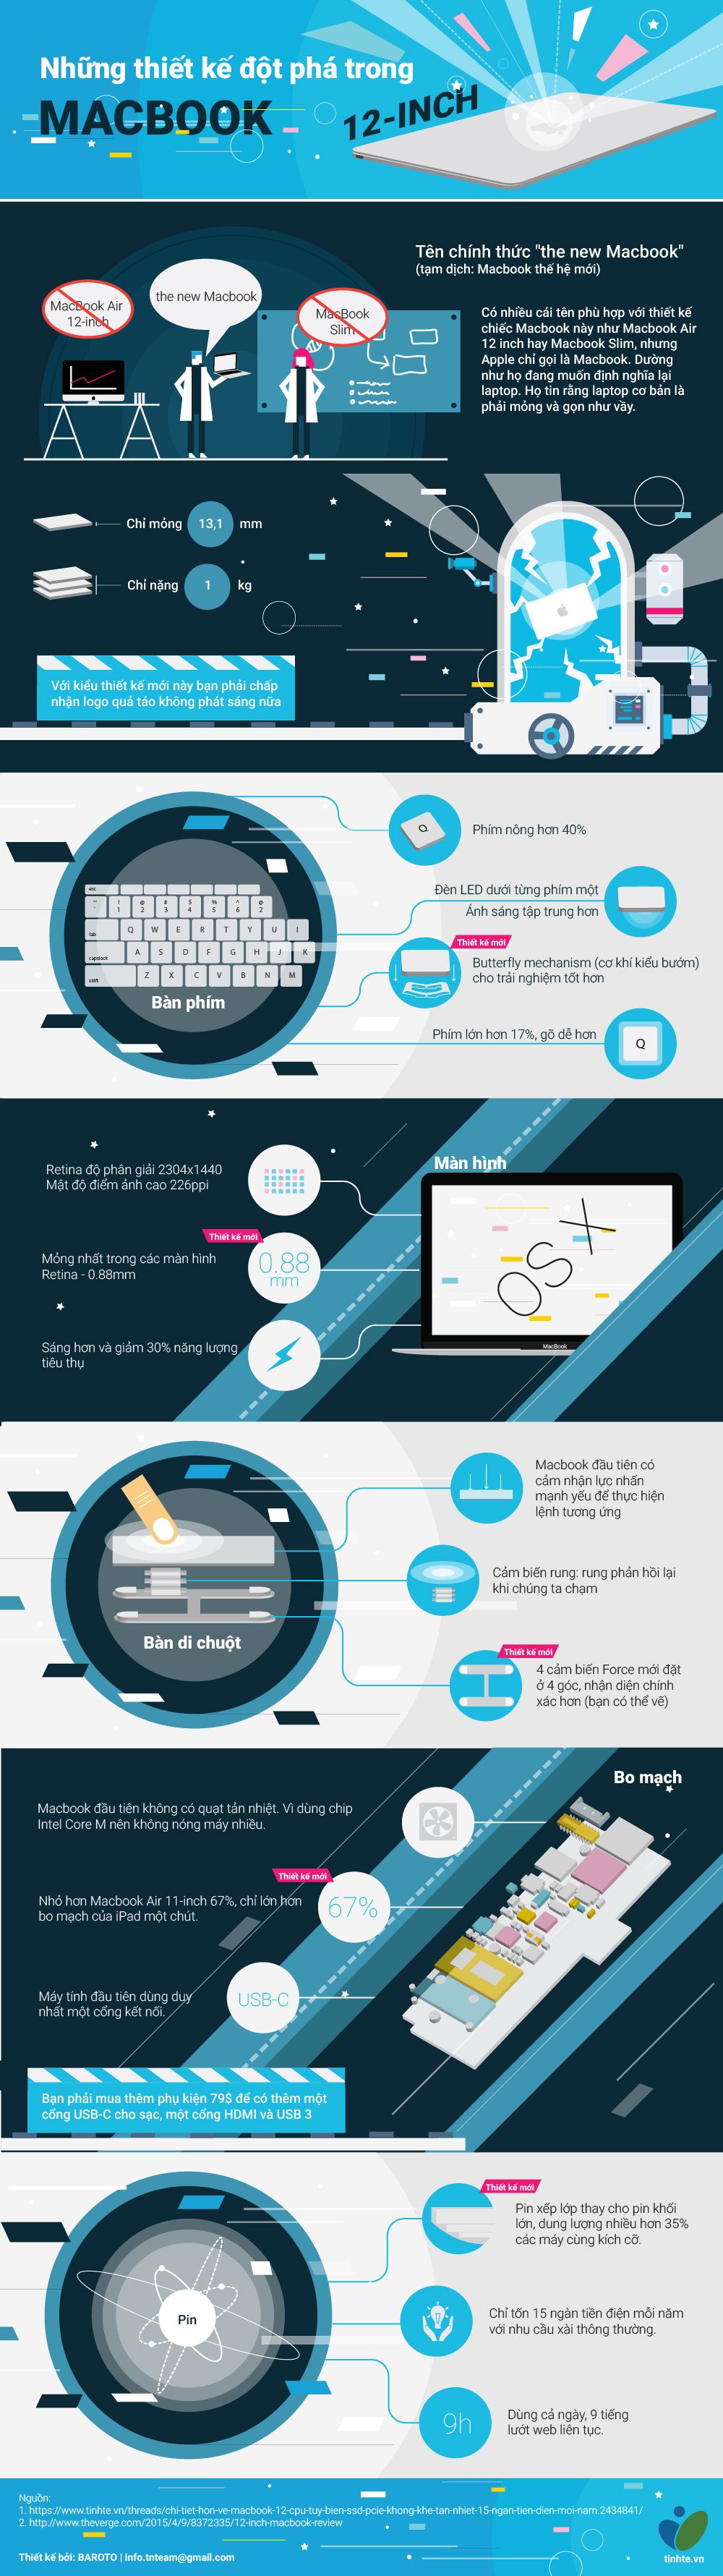 [Infographic] Những thiết kế đột phá trong Macbook 12 inch